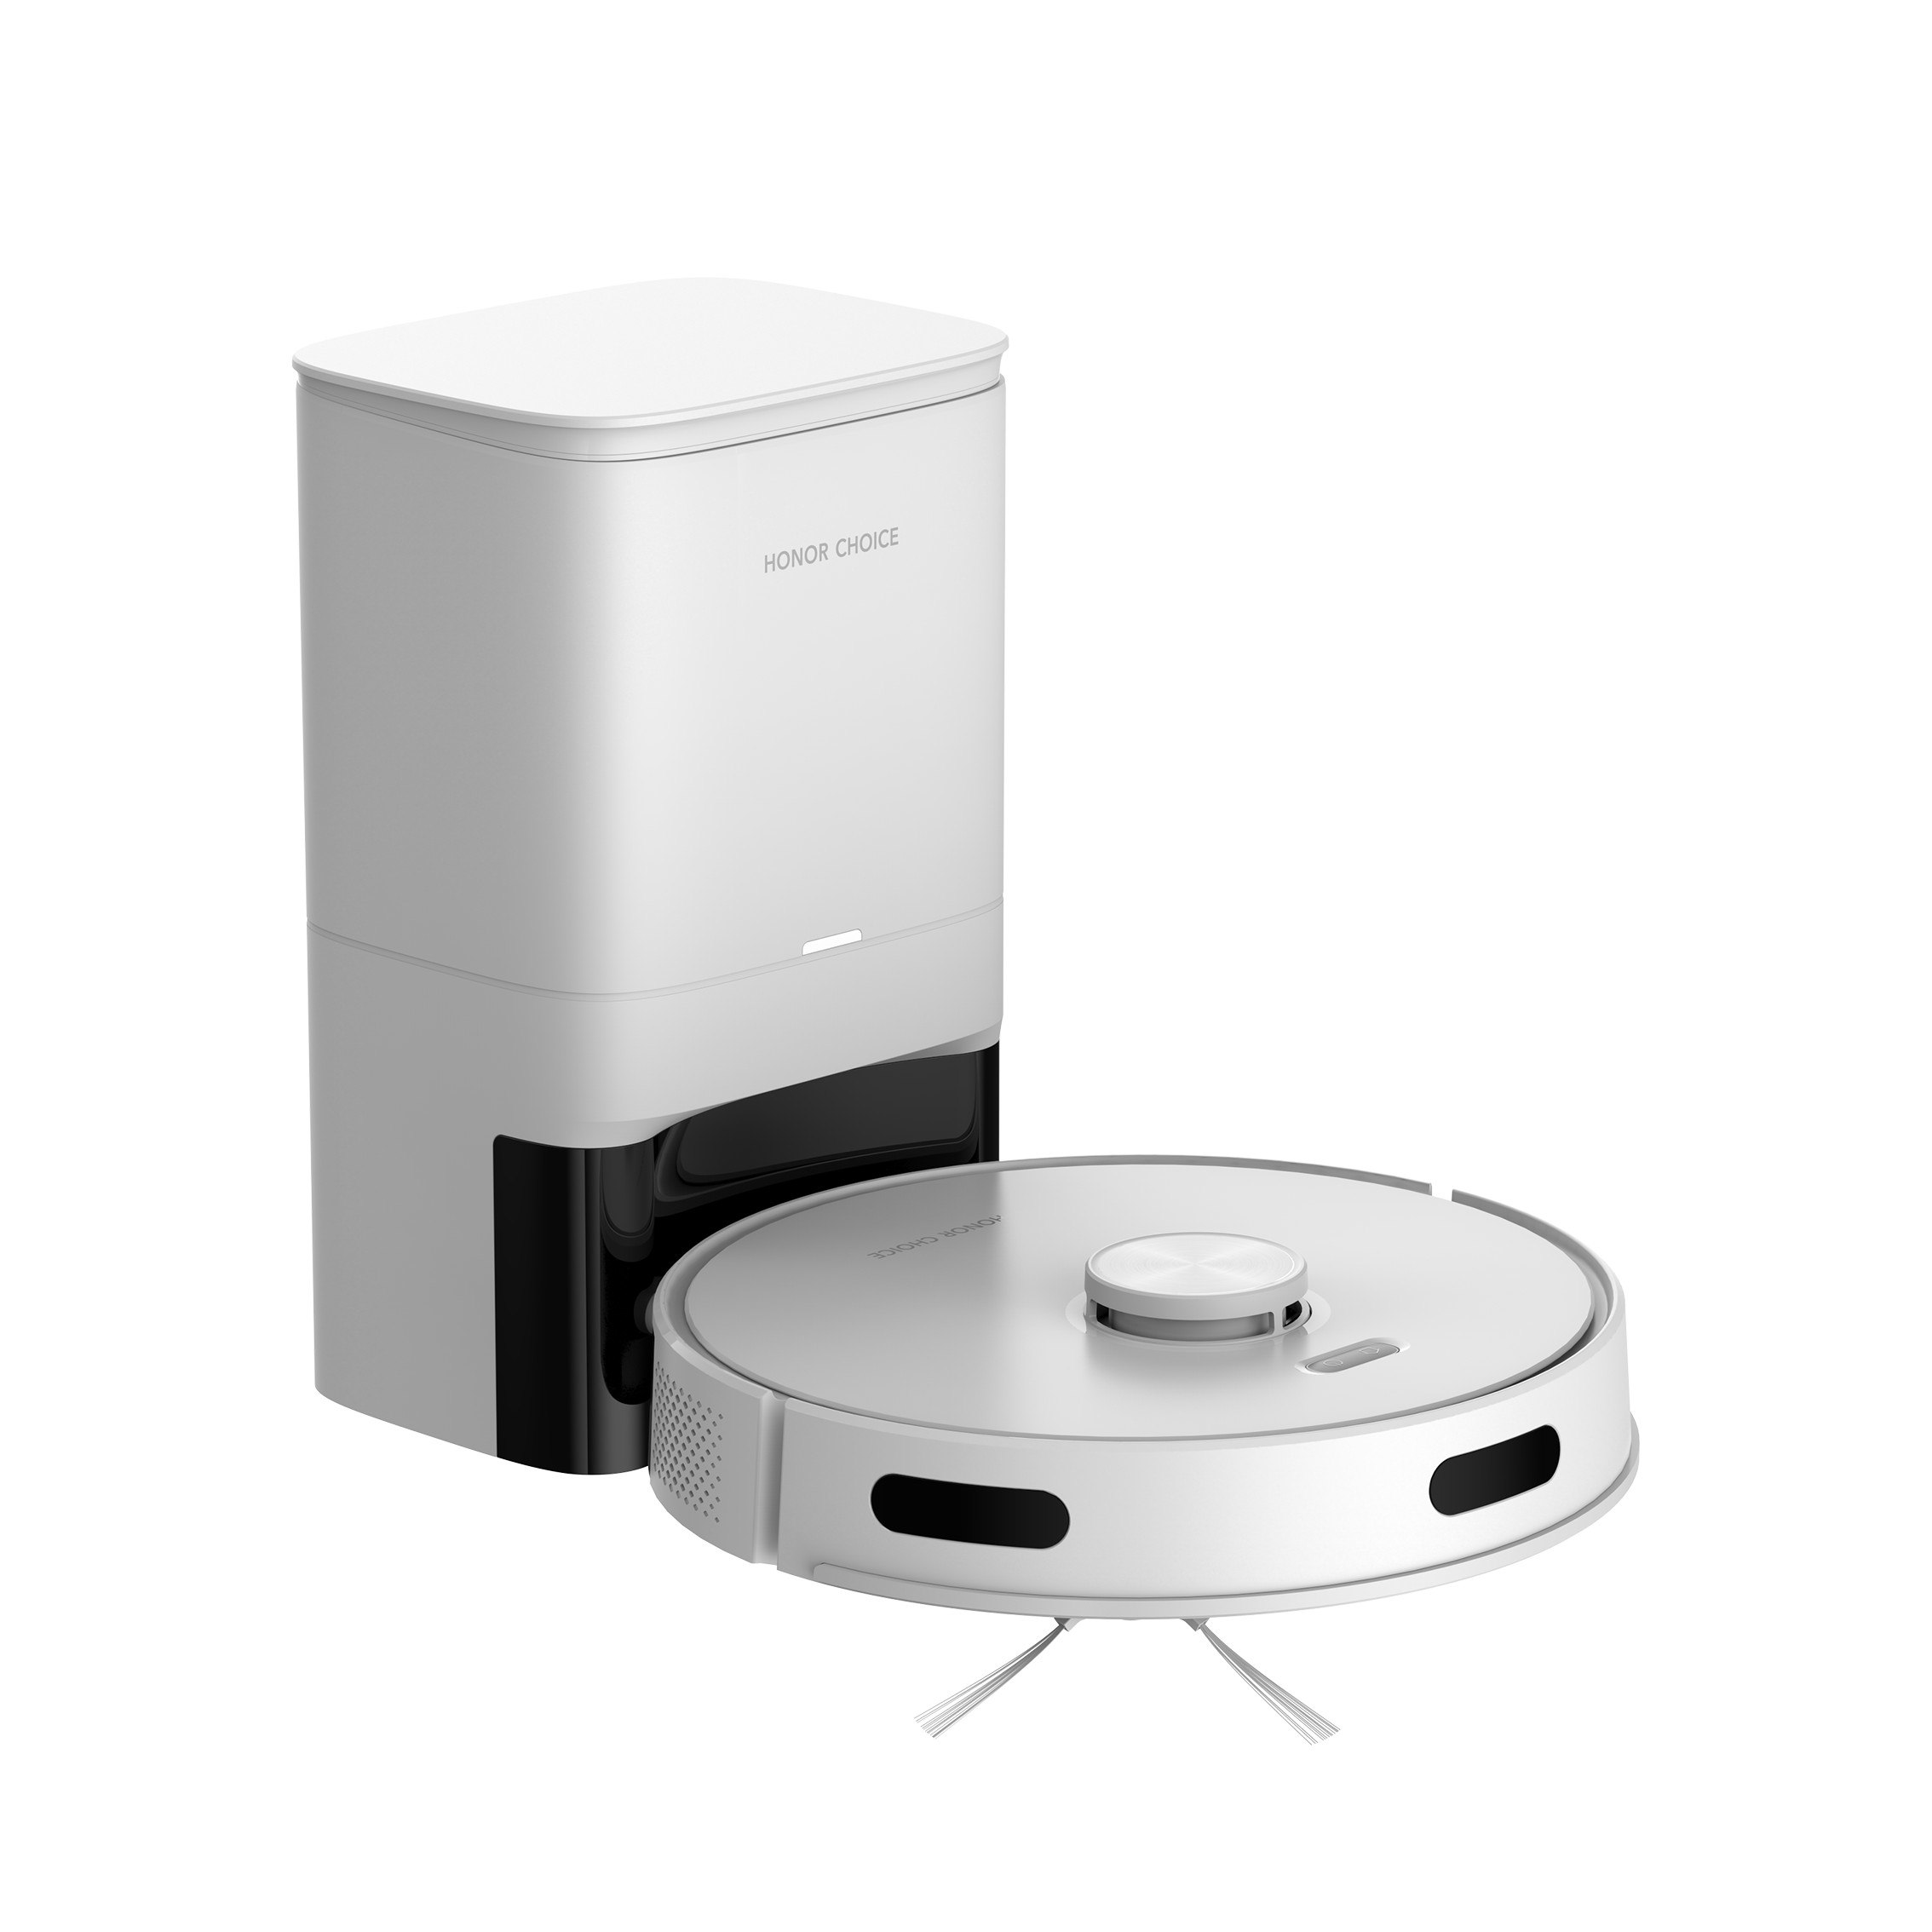 Робот-пылесос Honor Choice Robot Cleaner R2 Plus белый робот пылесос smartmi vortexwave robot vacuum cleaner белый